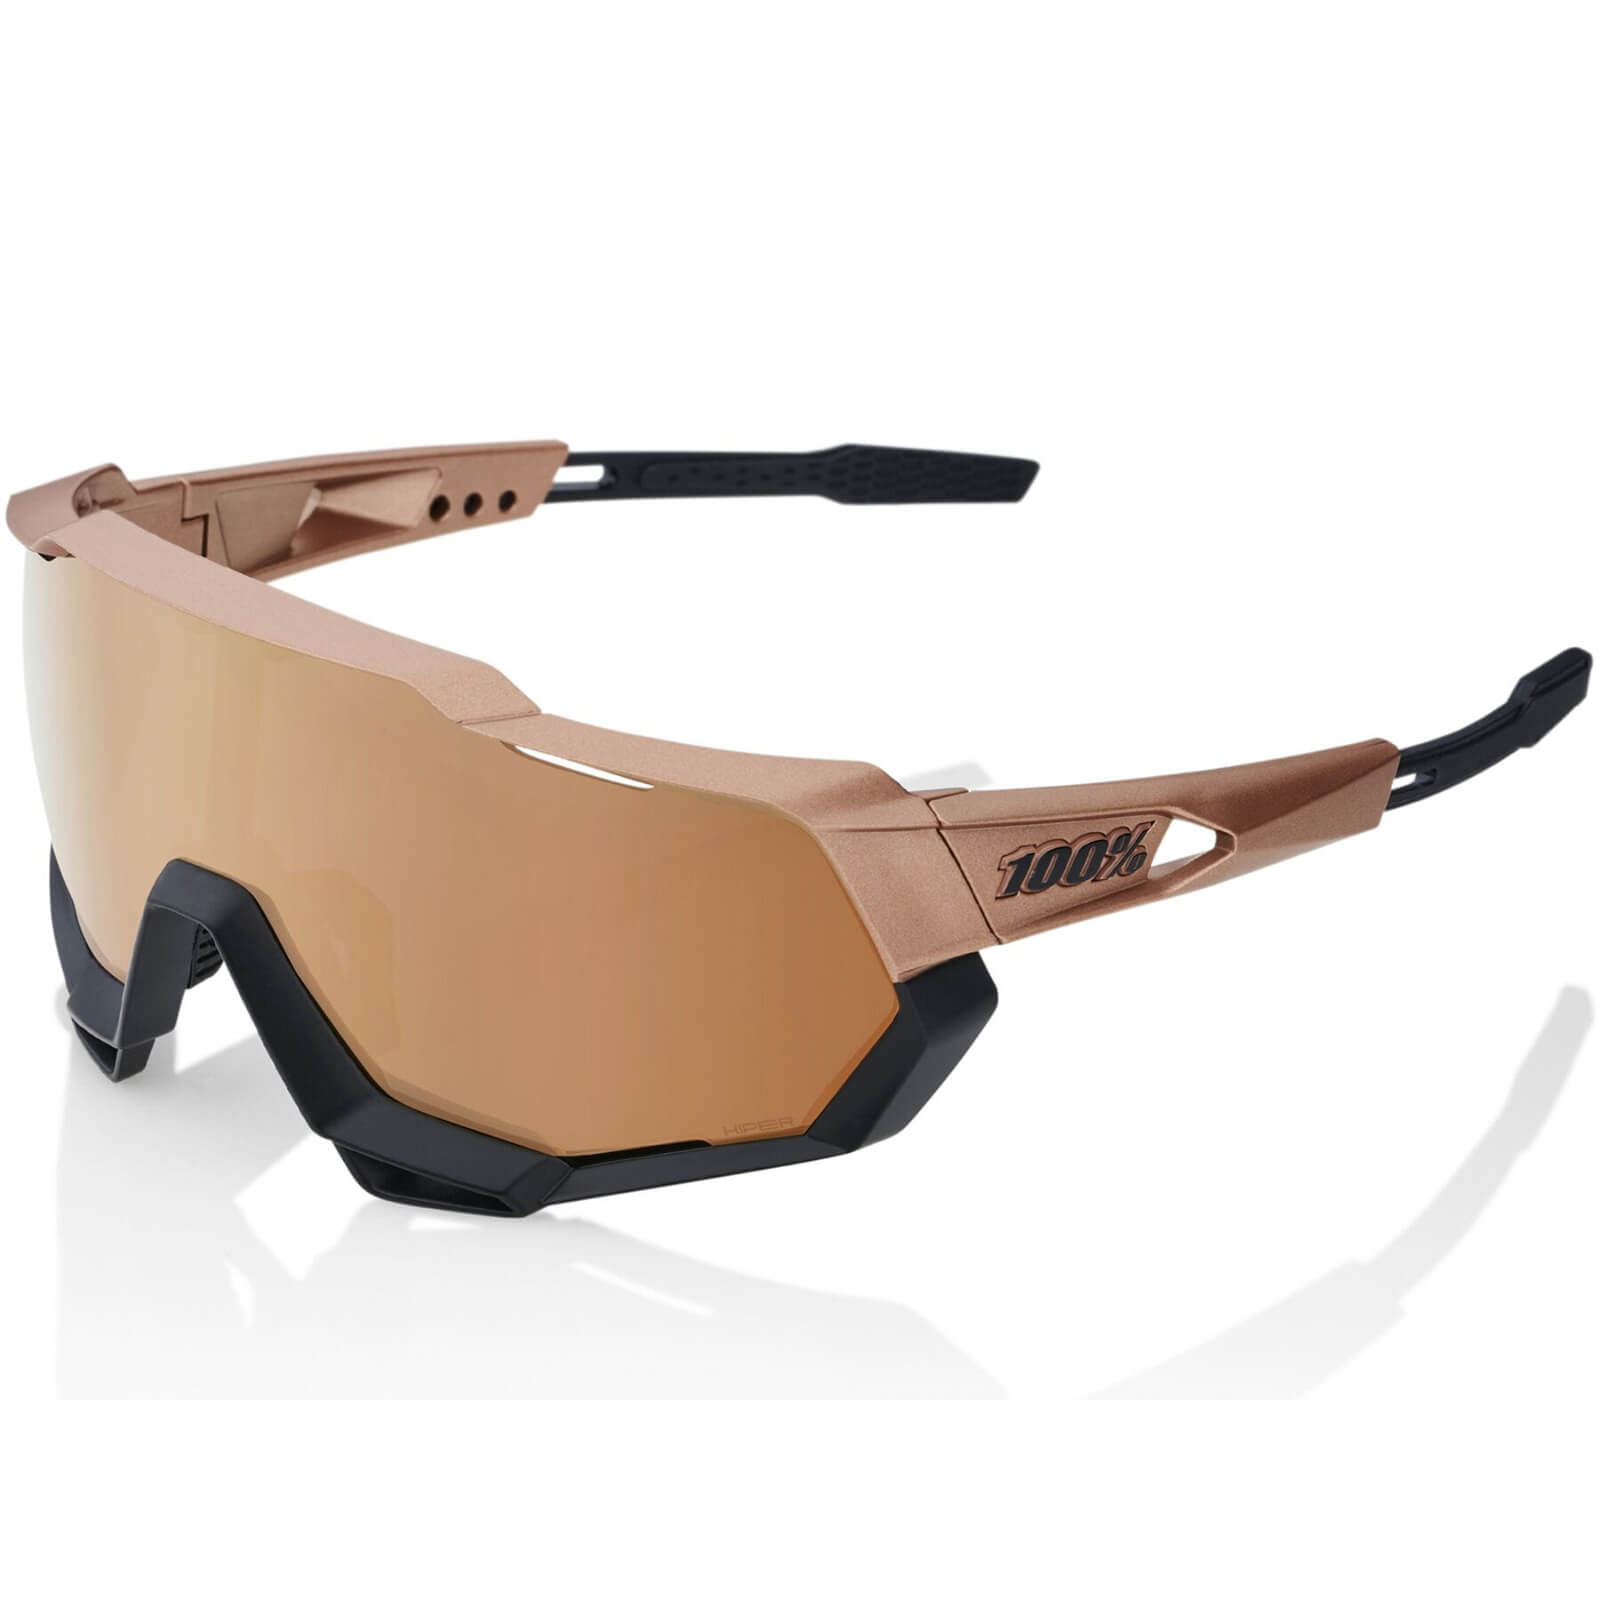 100% Speedtrap Sunglasses with HiPER Copper Mirror Lens – Matt Copper Chromium/Black